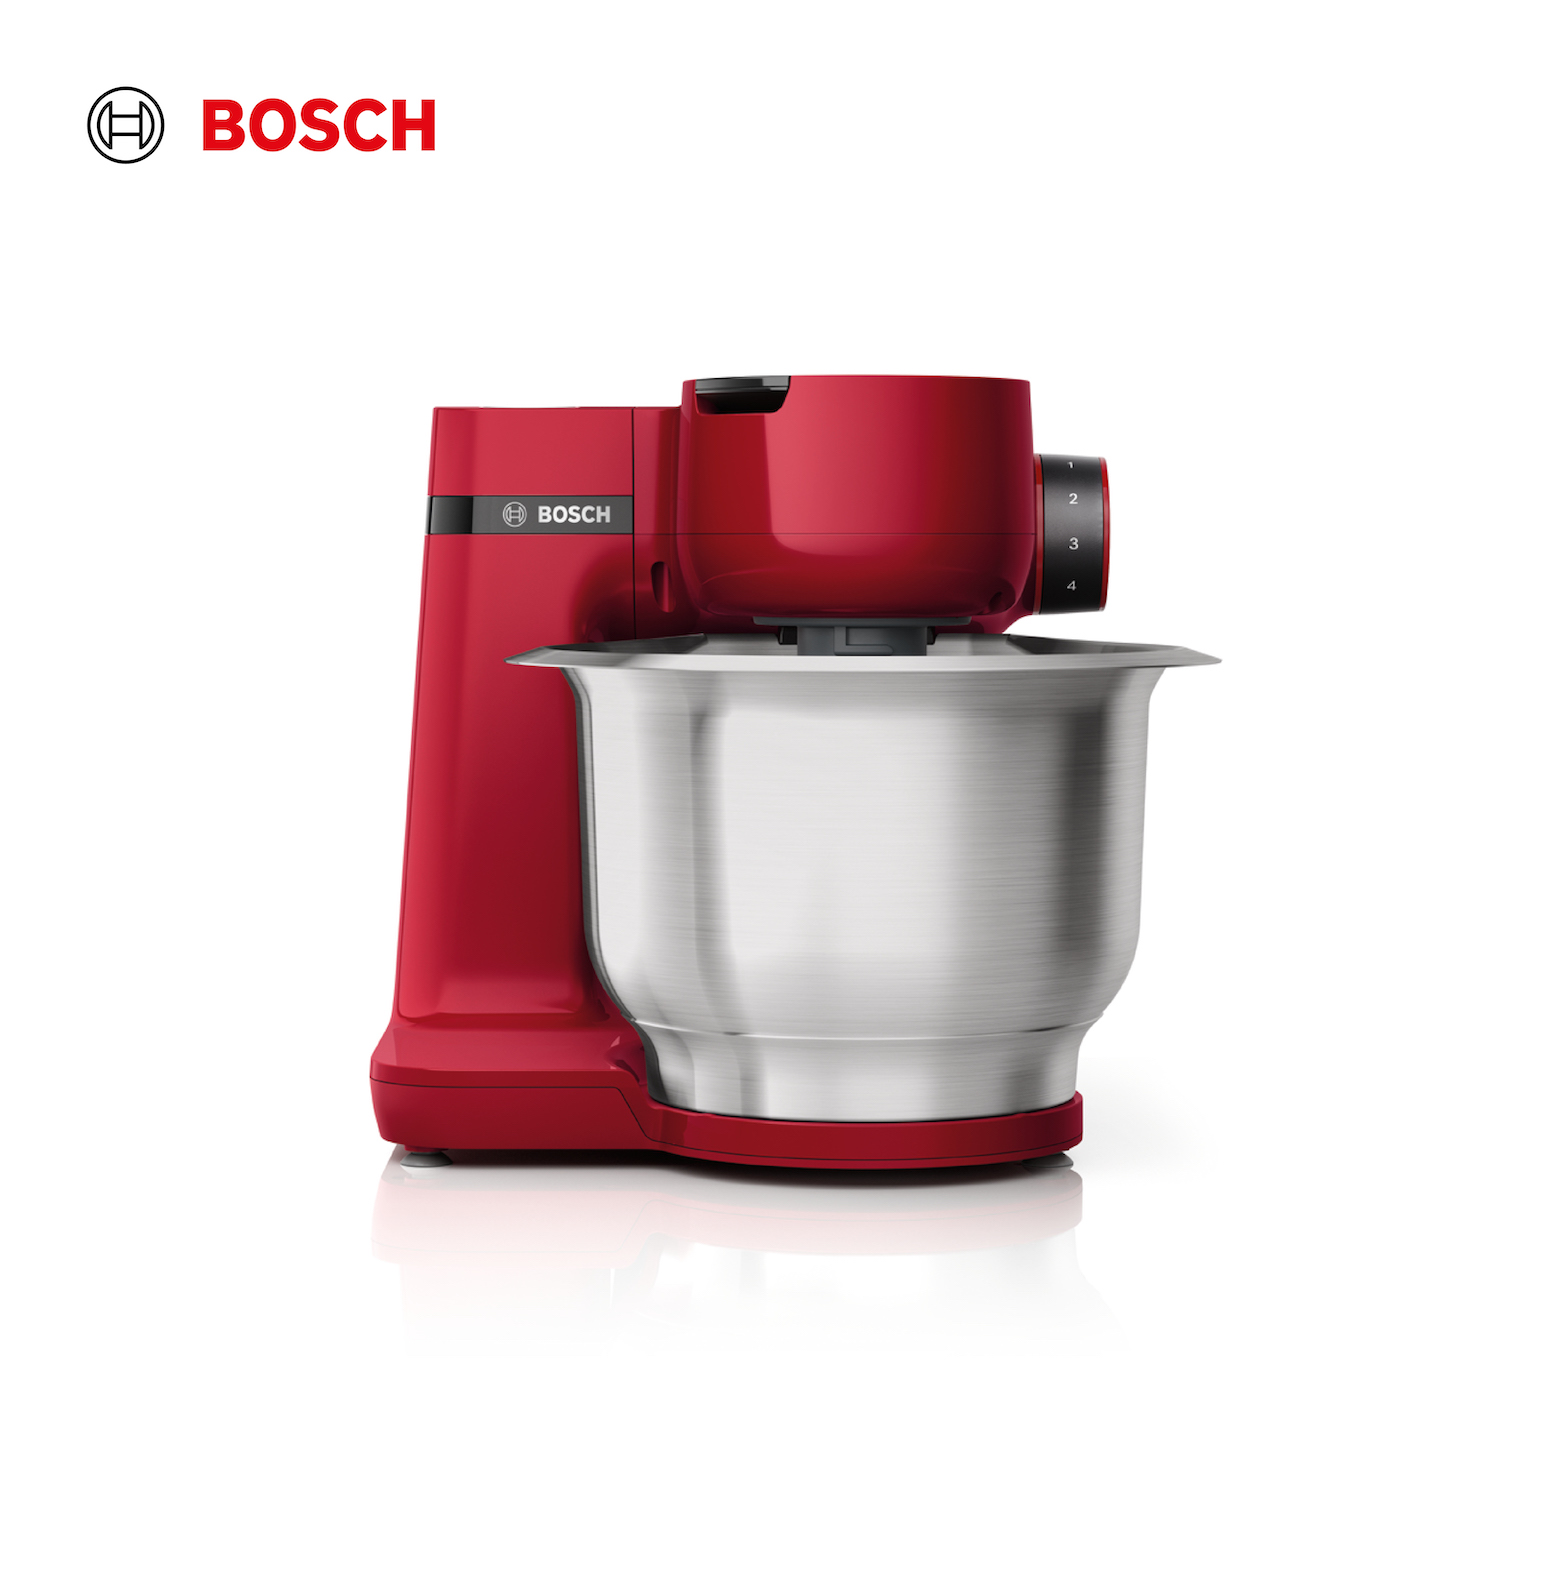 Bosch Mum 86 mixer - Mixers & Blenders - Singapore